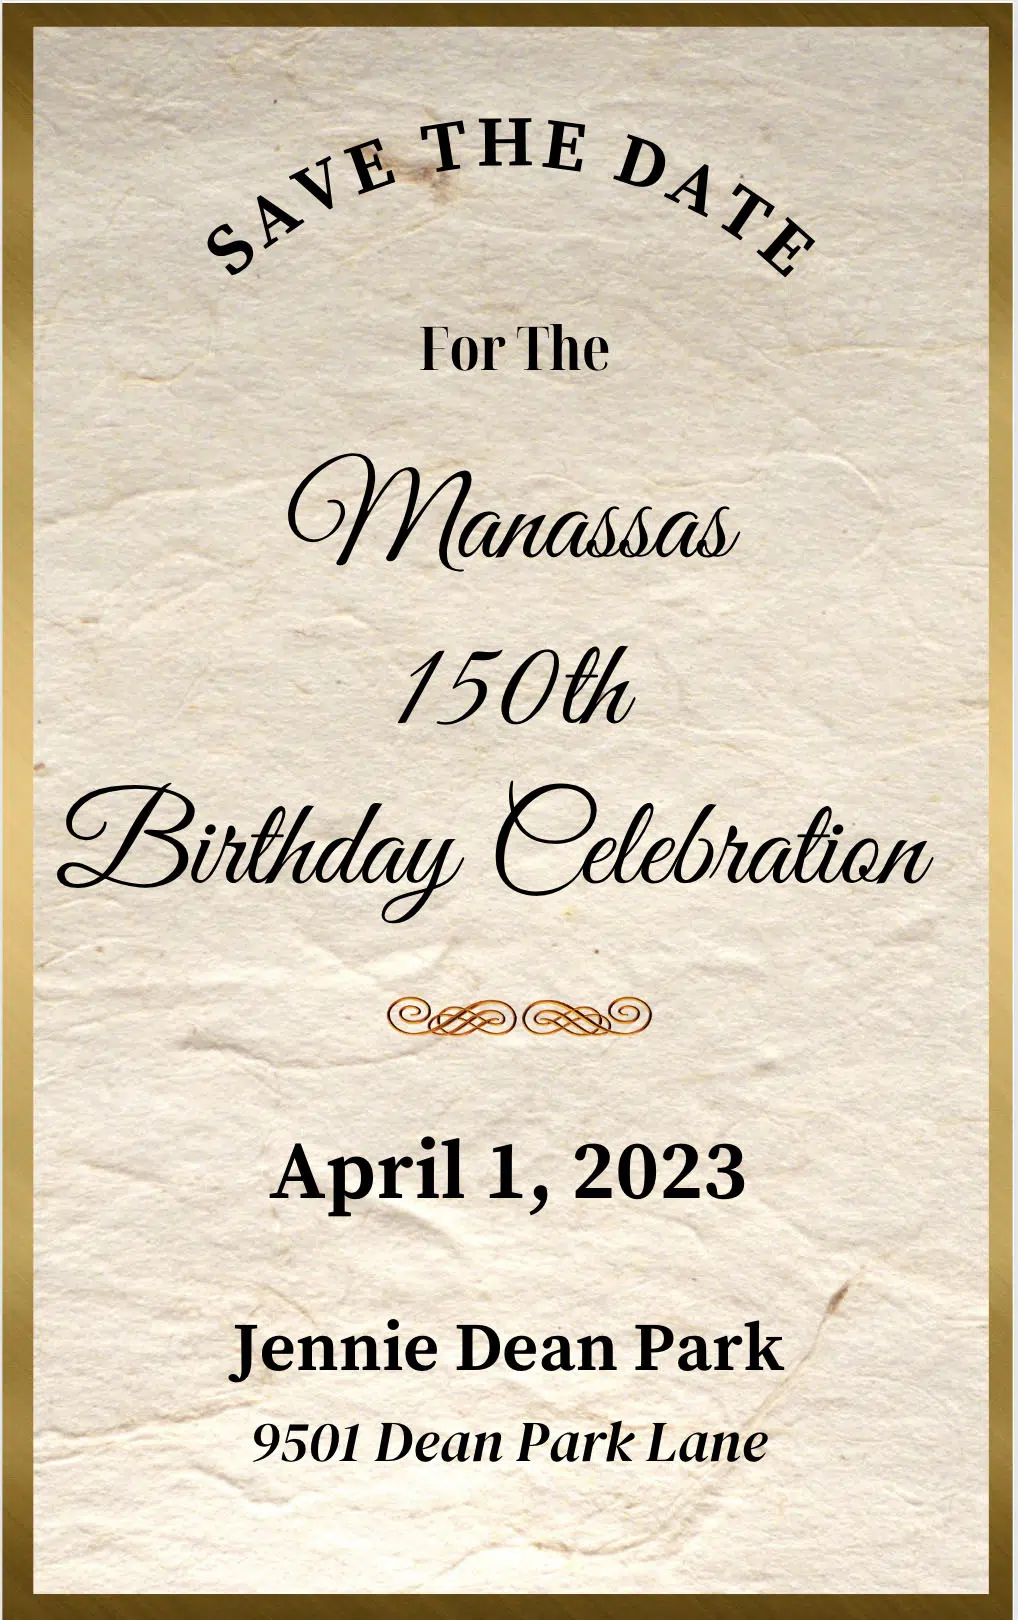 Du lịch thành phố Manassas: Chào mừng bạn đến với thành phố Manassas, điểm đến lý tưởng cho những ai yêu thích sự pha trộn giữa lịch sử và hiện đại. Thành phố có nhiều điểm tham quan độc đáo như Trung tâm Di sản Quốc gia Manassas, Bảo tàng Lịch sử Manassas và rất nhiều nhà hàng và quán cà phê đẹp mắt. Đừng bỏ lỡ cơ hội để khám phá vẻ đẹp đặc trưng của thành phố Manassas nhé!